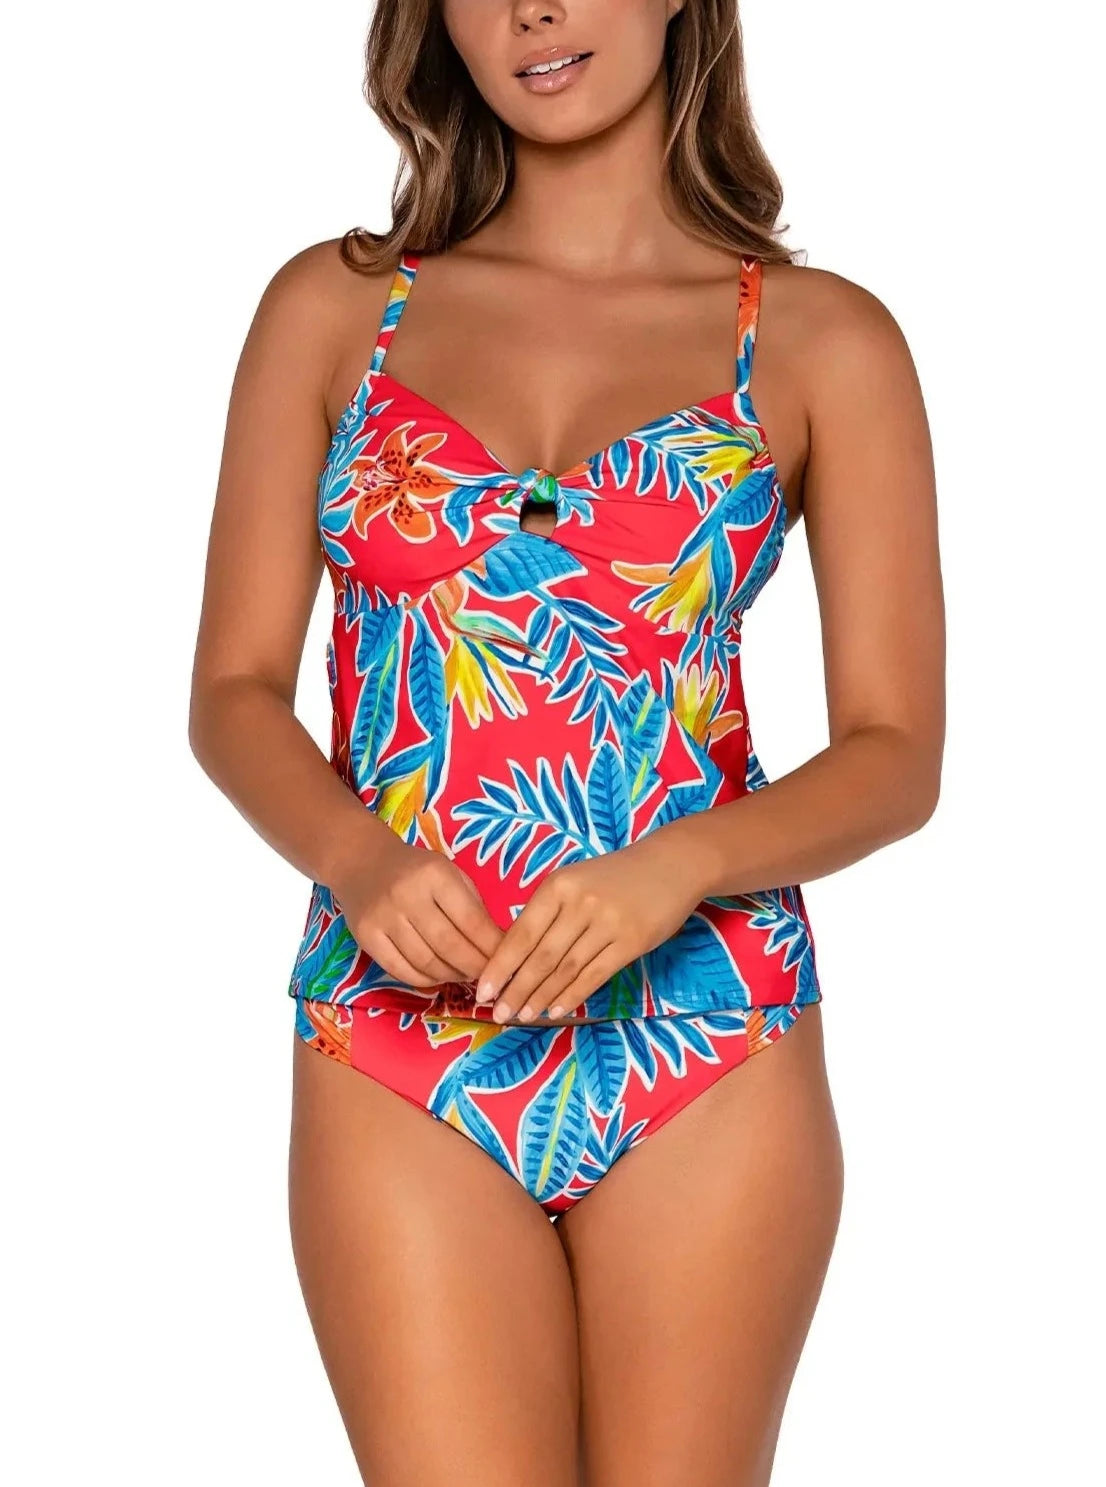 Sunsets Escape "Brands,Swimwear" 32D/34C / TIGLI / 714 Sunsets Tiger Lily Maeve Tankini